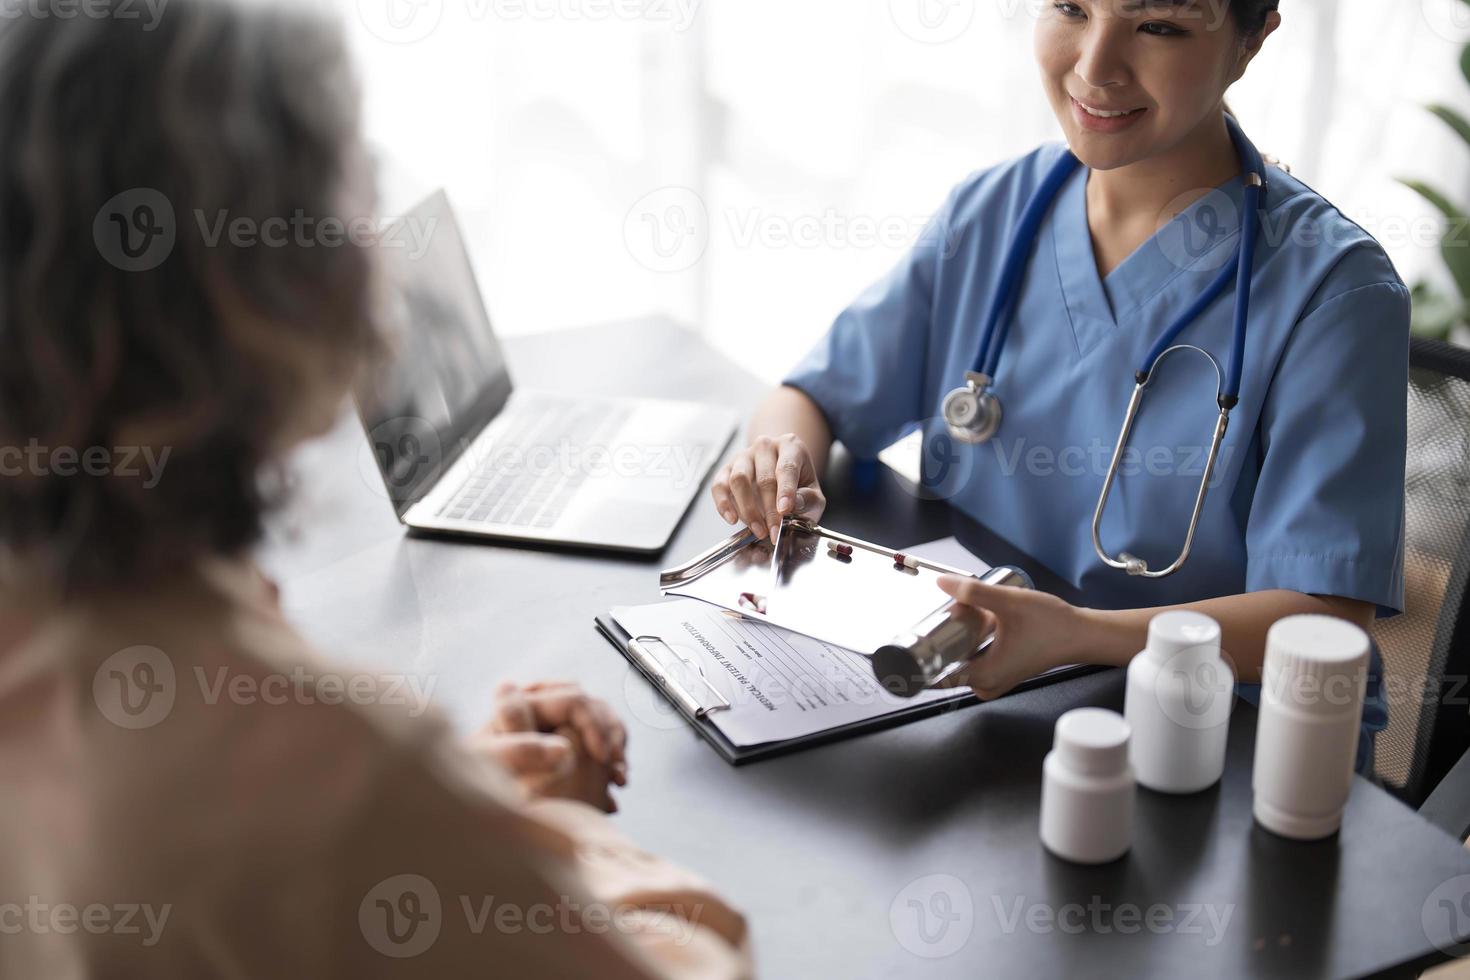 une patiente âgée âgée asiatique consulte une infirmière médecin dans une maison de soins infirmiers. soignant thérapeute pharmacien fille tenir une bouteille de pilules de médecine, expliquer la prescription à un homme handicapé plus âgé photo